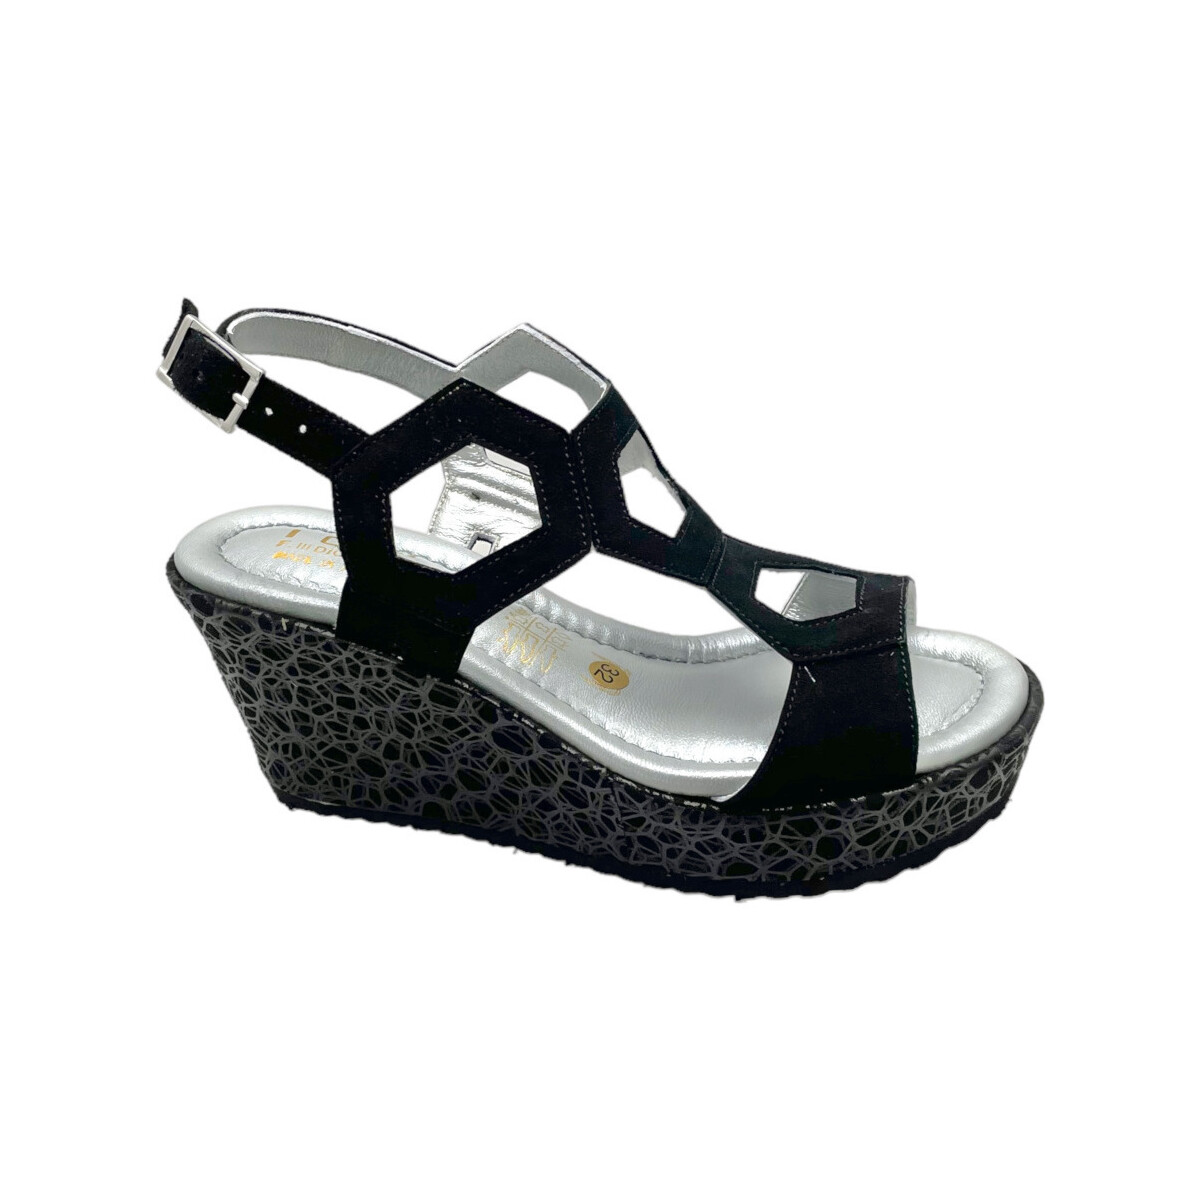 Chaussures Femme Sandales et Nu-pieds Shoes4Me SHO2376ne Noir